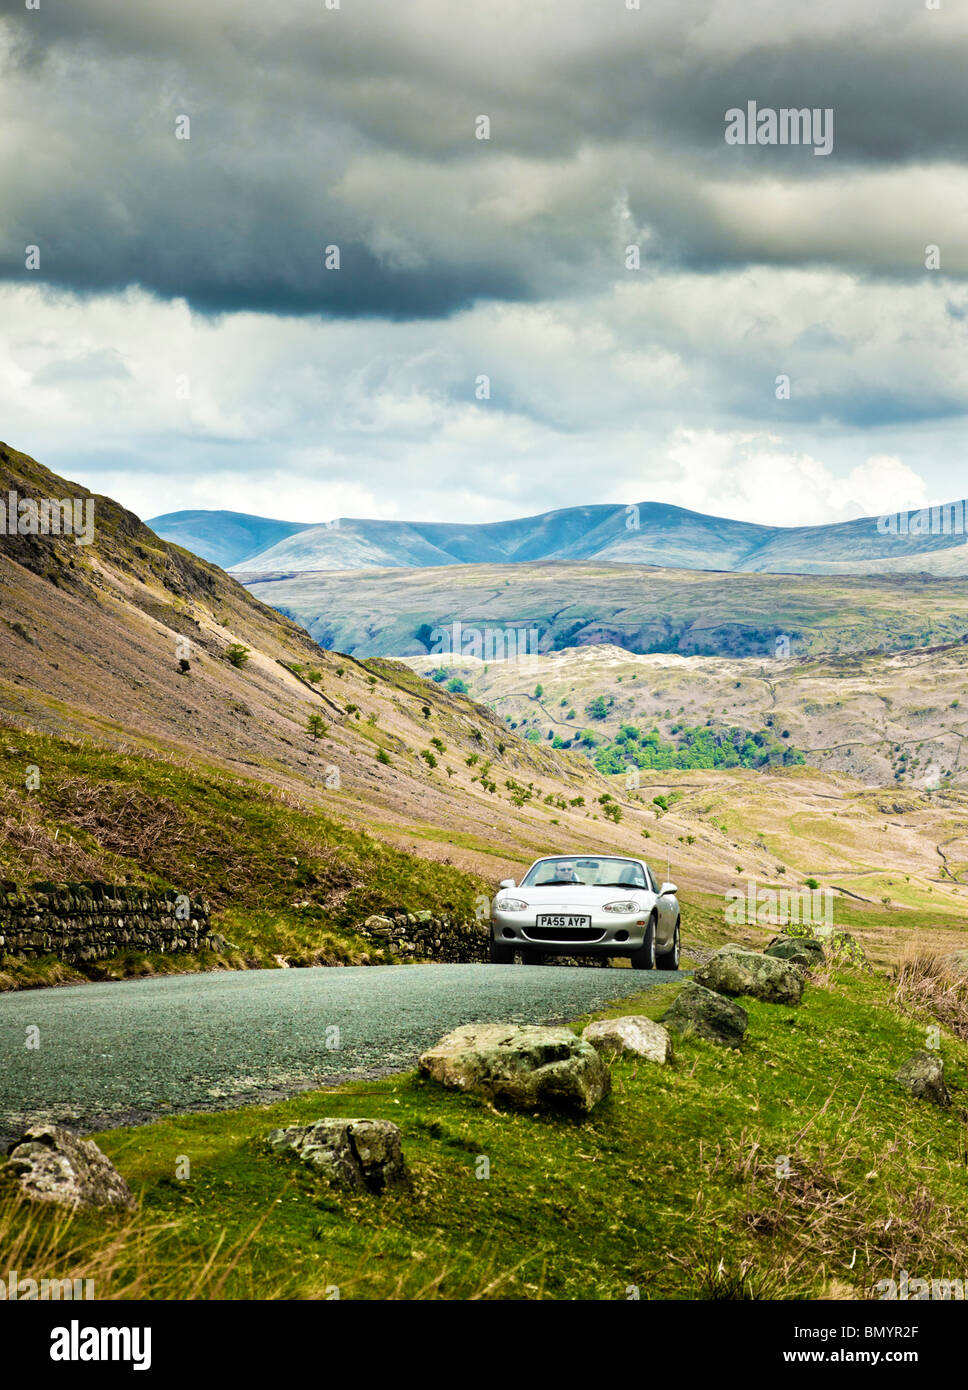 La guida, UK, sport auto guidando su una strada di montagna nel distretto del lago, in un viaggio su strada in Cumbria, England, Regno Unito Foto Stock